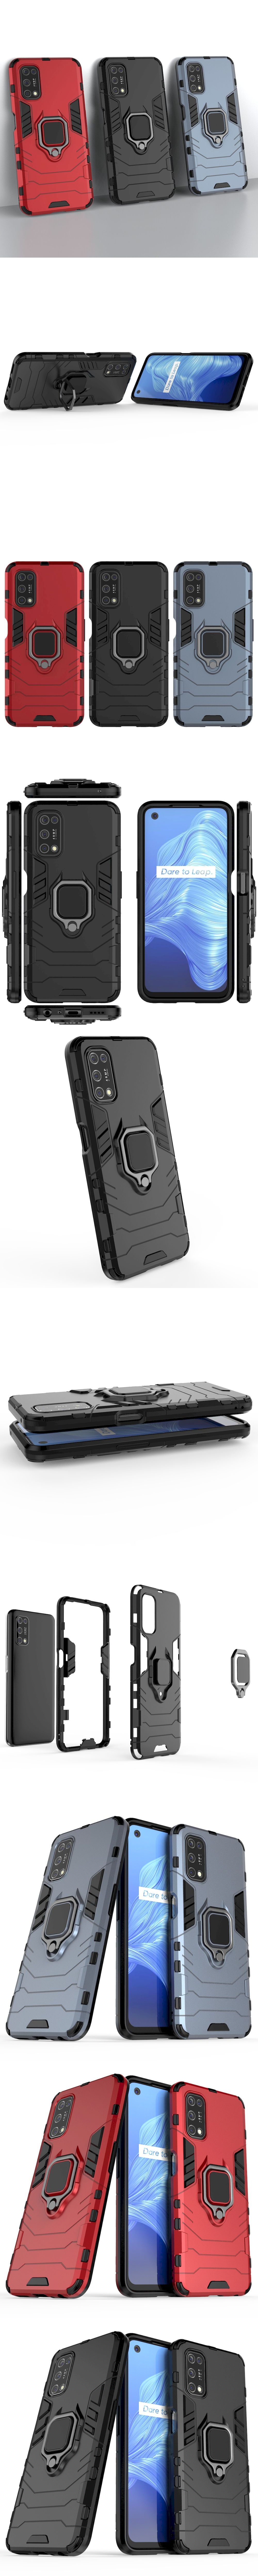 275-Realme-雙層抗震TPU+PC軟硬殼全包式指環支架手機殼背蓋(7通用V5)